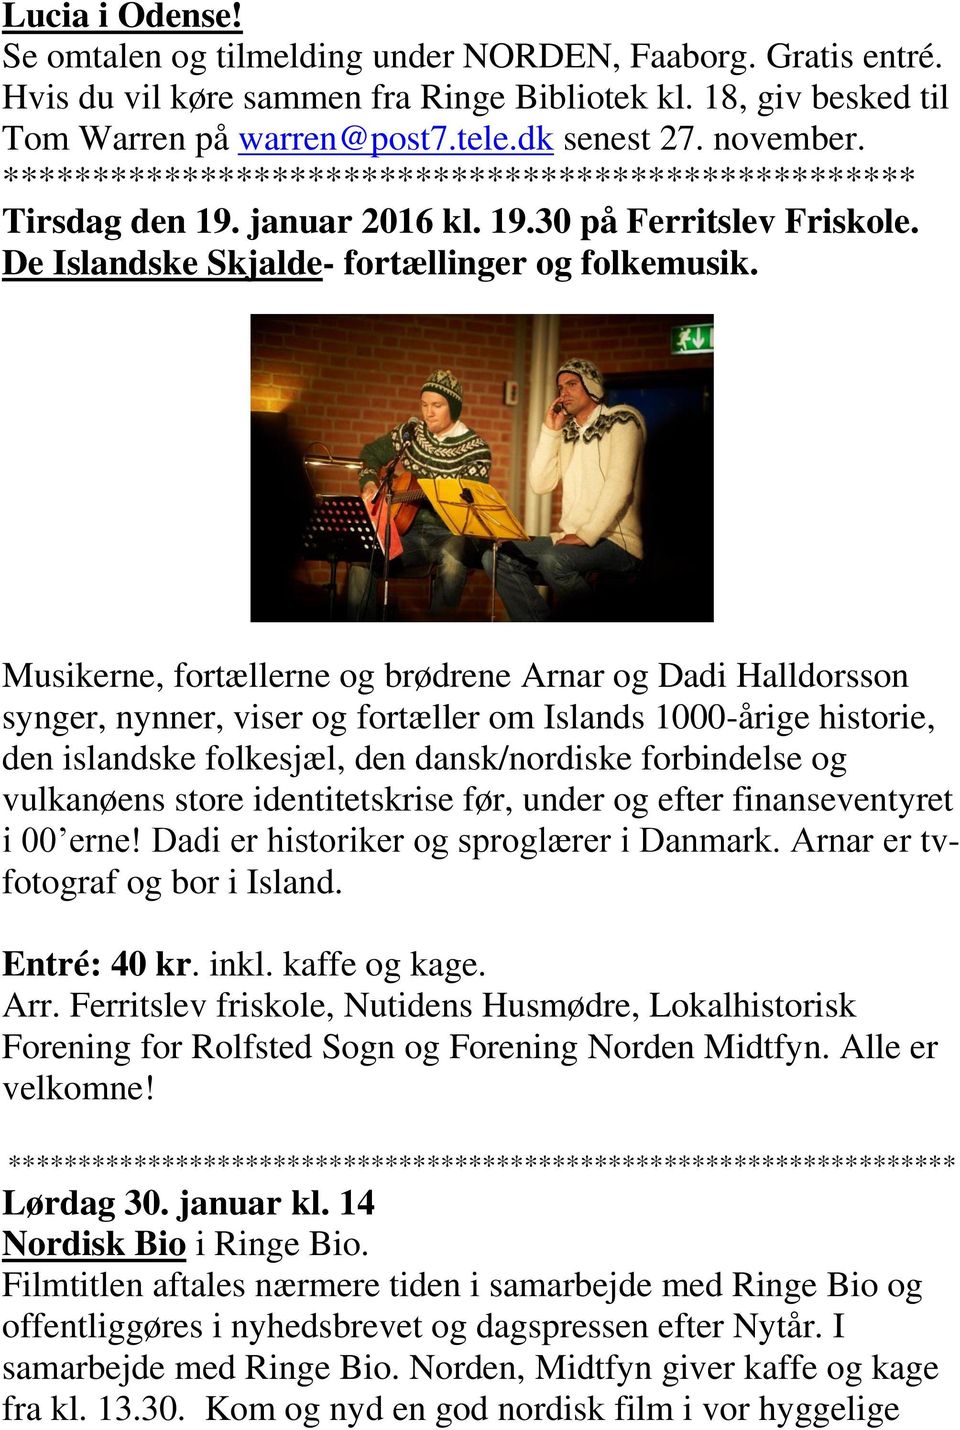 Musikerne, fortællerne og brødrene Arnar og Dadi Halldorsson synger, nynner, viser og fortæller om Islands 1000-årige historie, den islandske folkesjæl, den dansk/nordiske forbindelse og vulkanøens